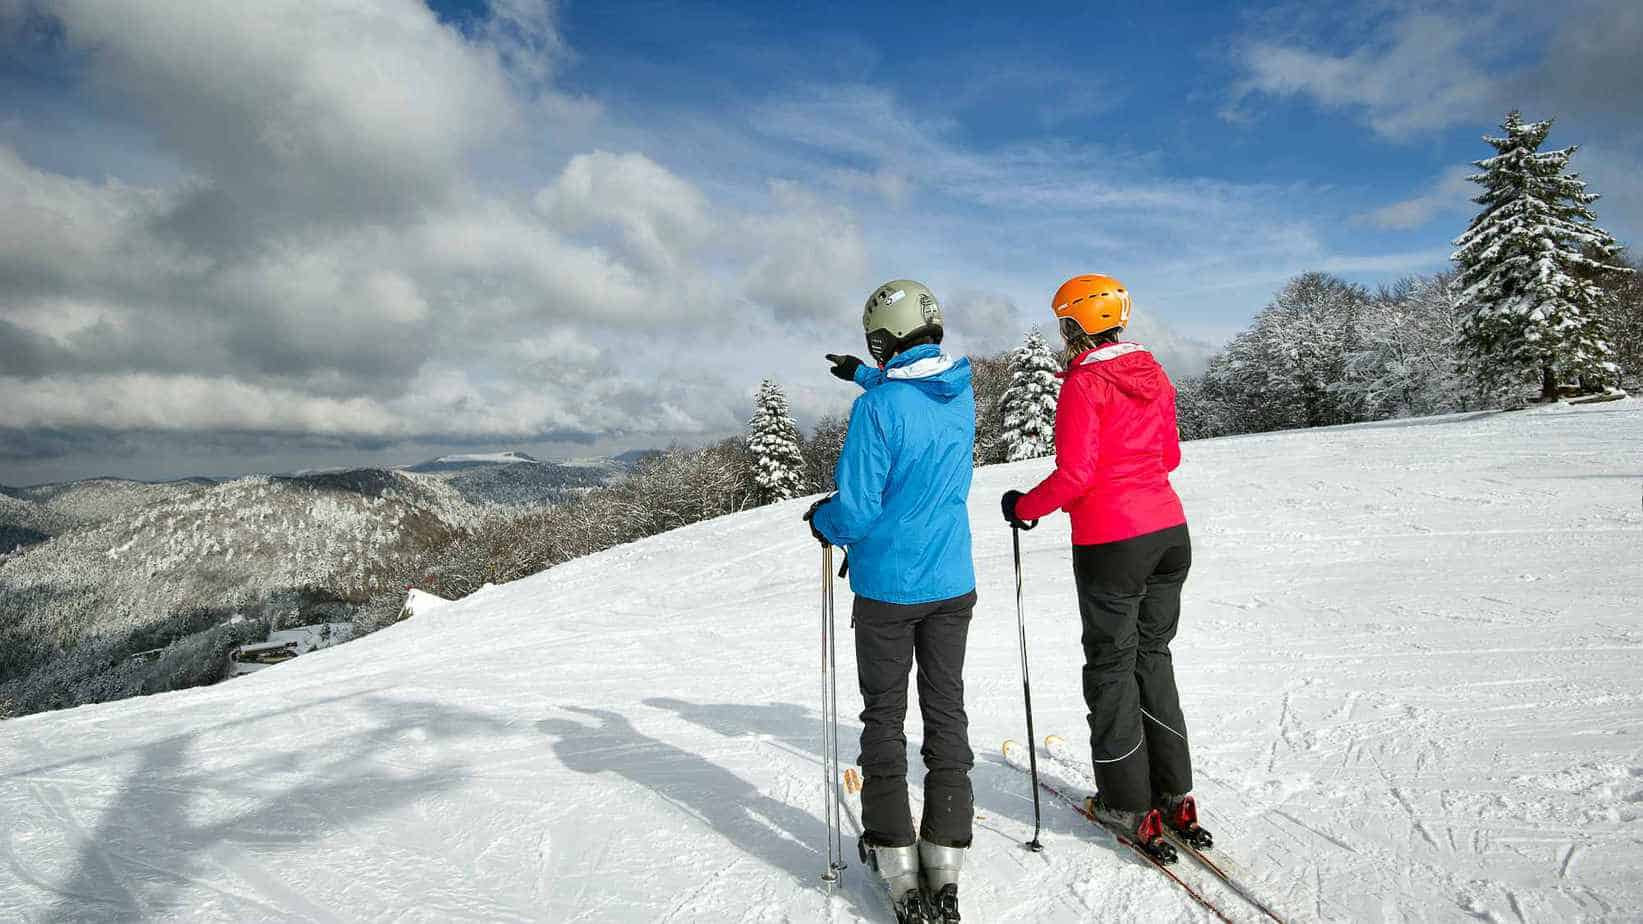 Twee skiërs, één in een blauwe jas en de andere in een roze jas, staan bovenaan een besneeuwde helling. Ze kijken uit over een indrukwekkend berglandschap bedekt met sneeuw. De lucht is gedeeltelijk bewolkt en er zijn sporen van andere skiërs zichtbaar in de sneeuw voor hen.